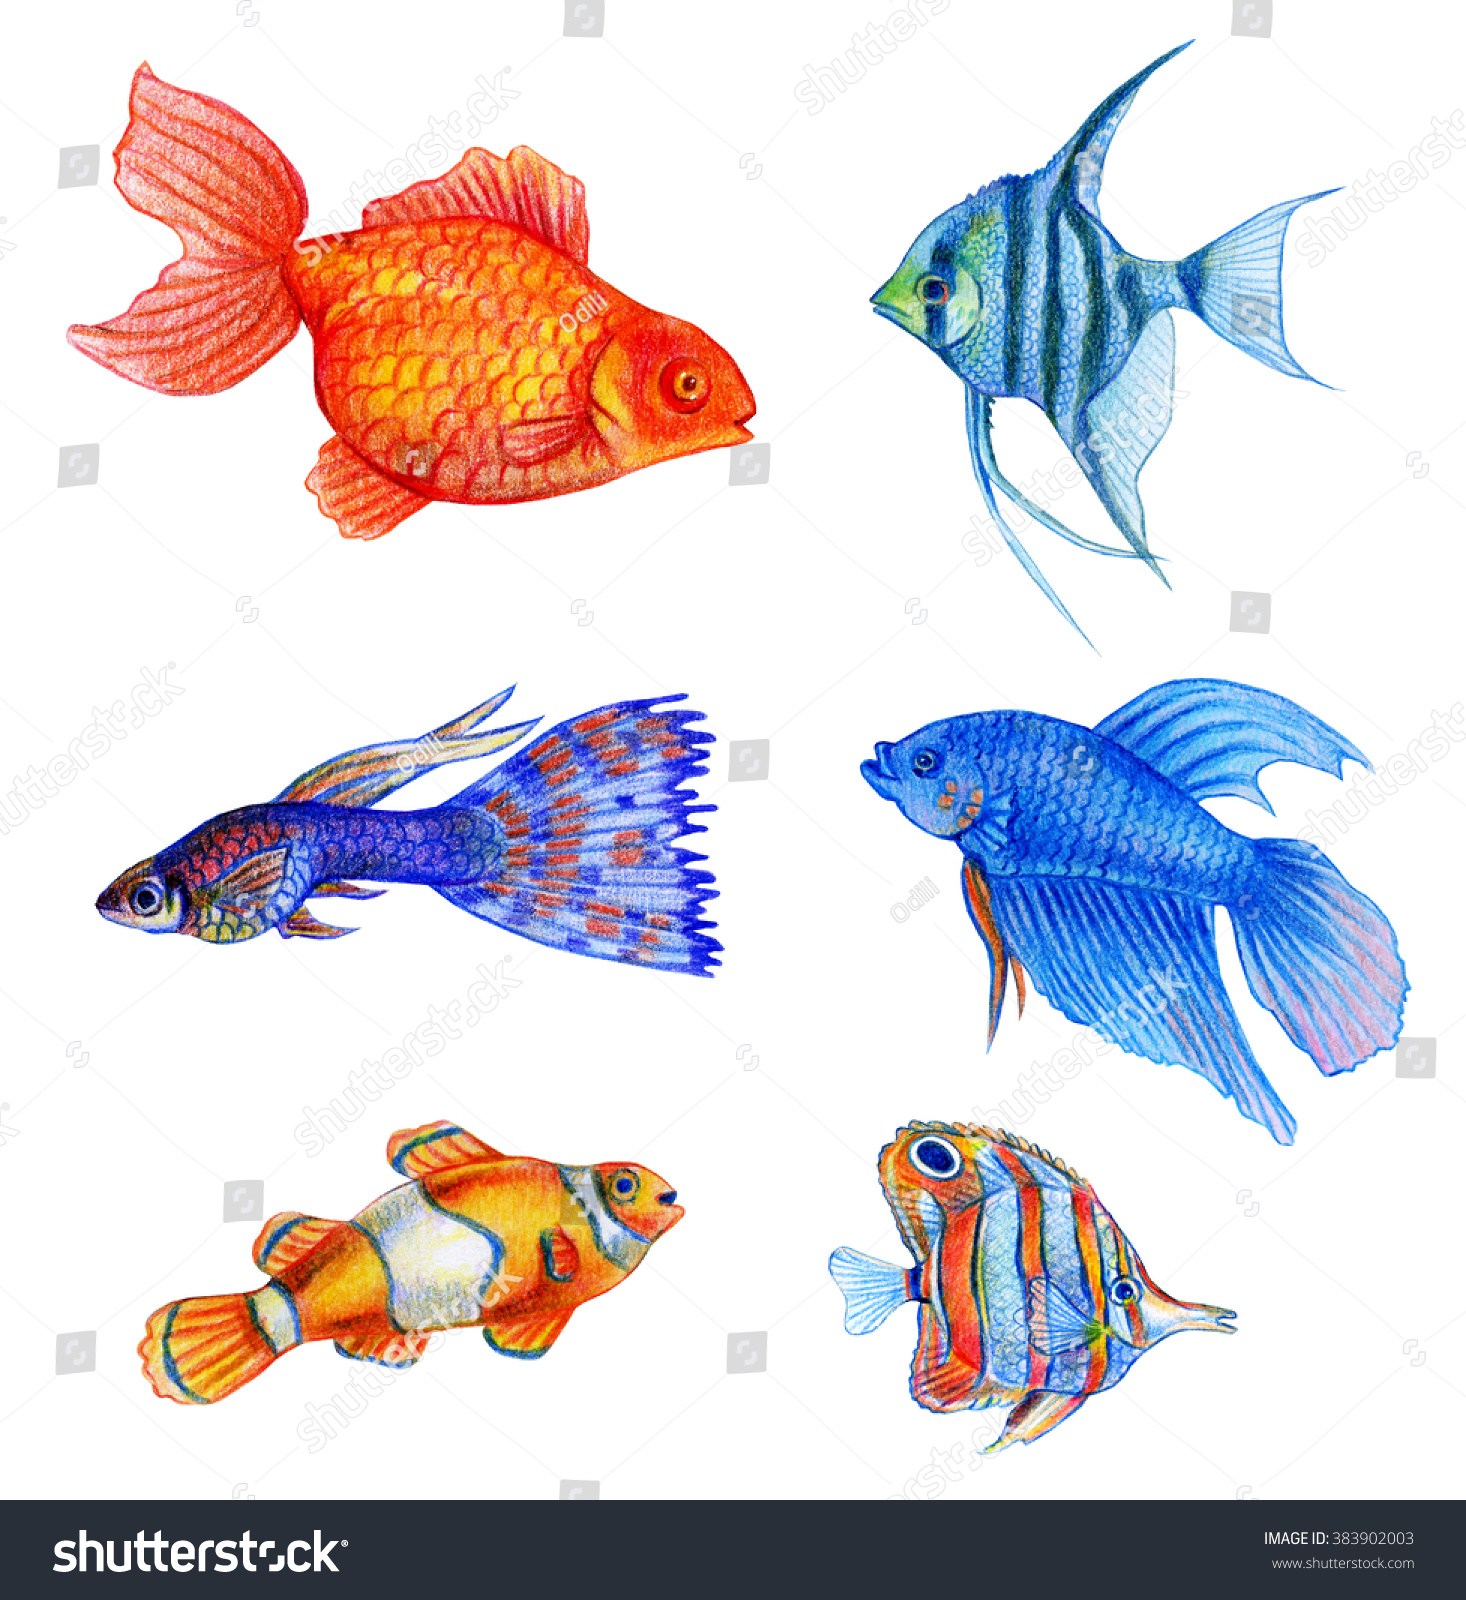 Аквариумные рыбки рисование для детей